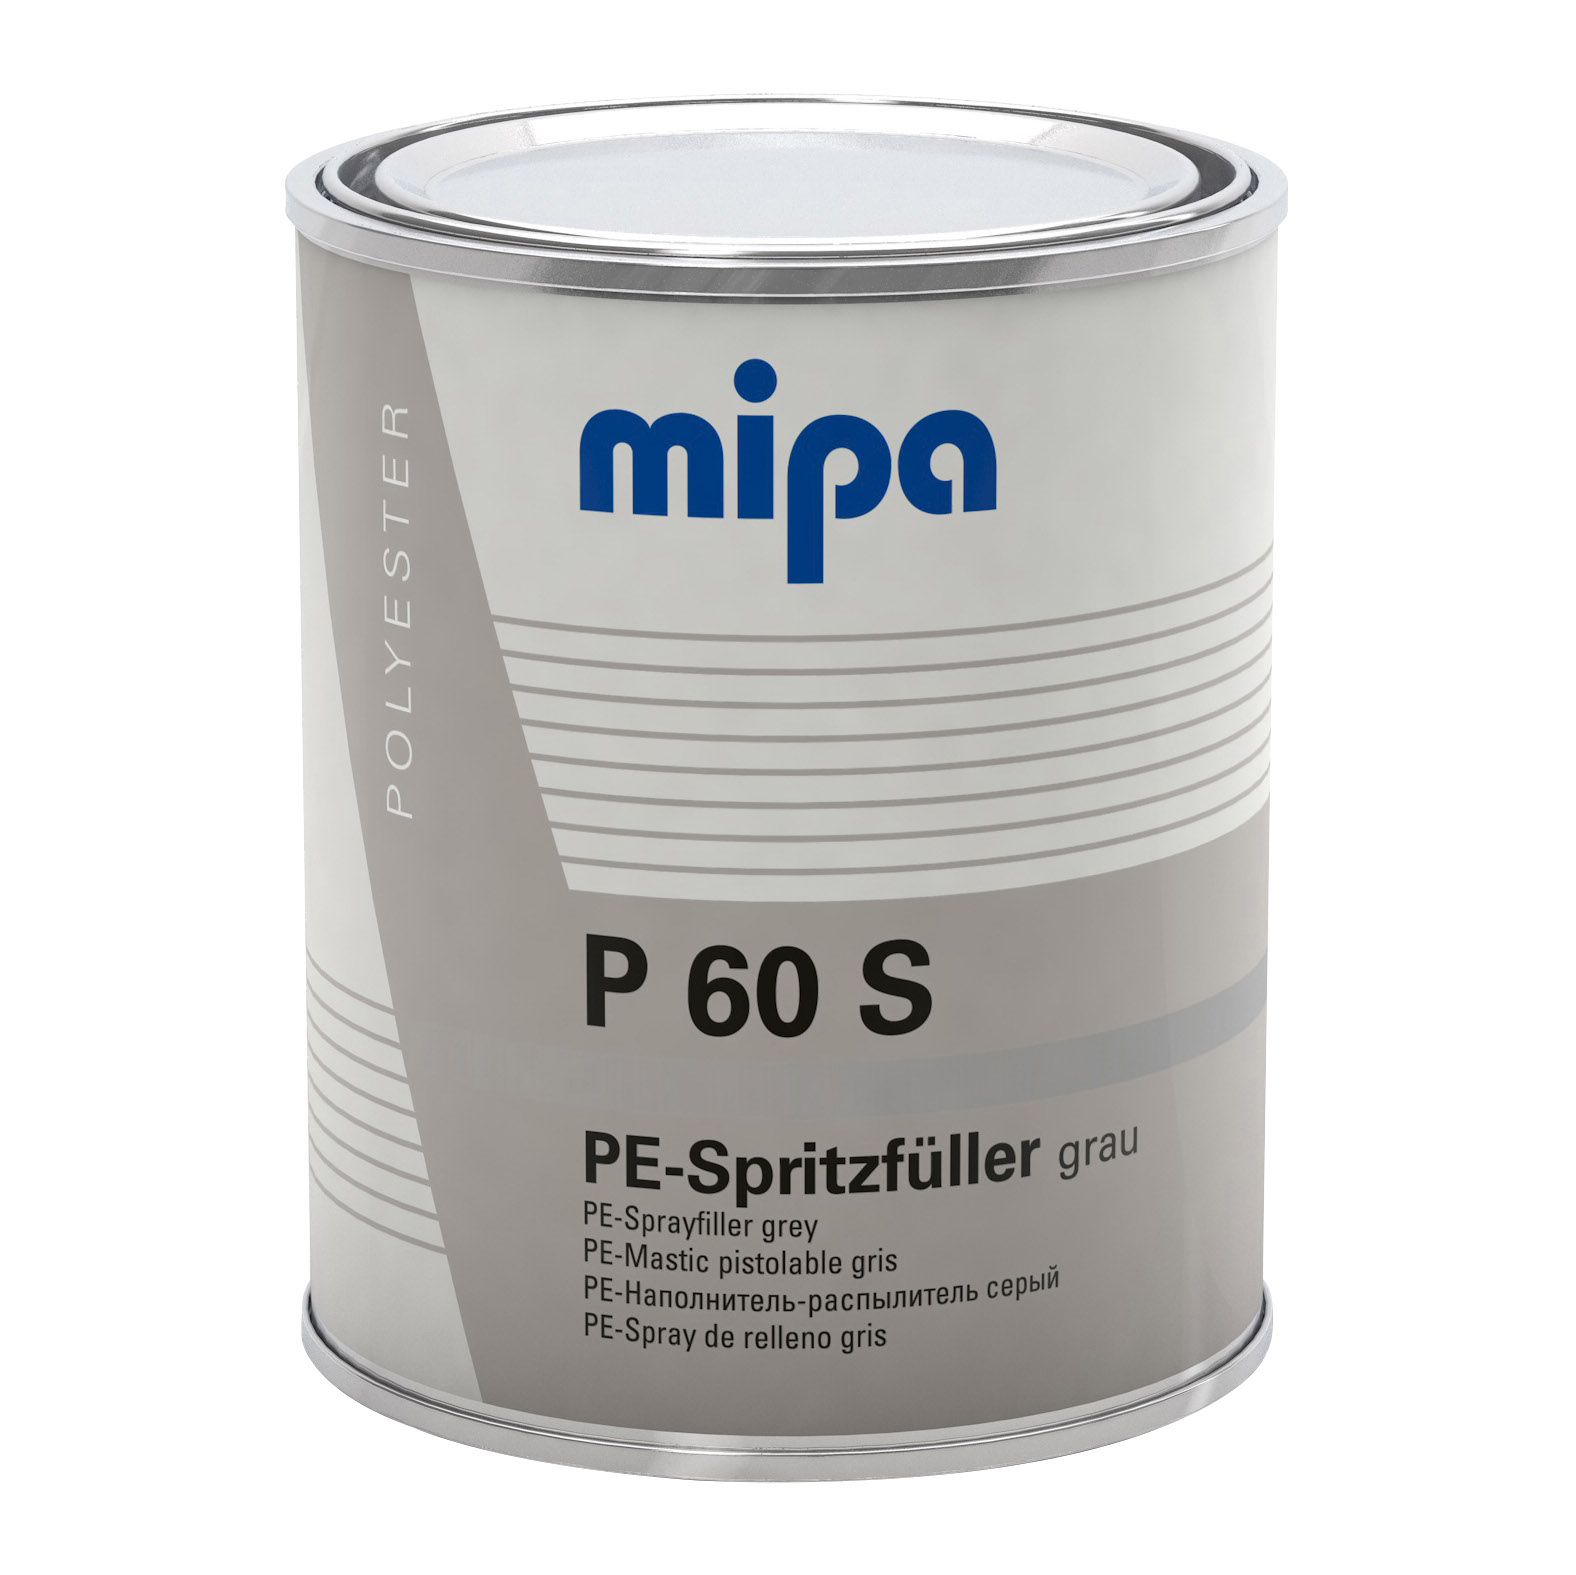 Mipa P 60 S Polyester-Dickschicht-Spritzfüller, 1l